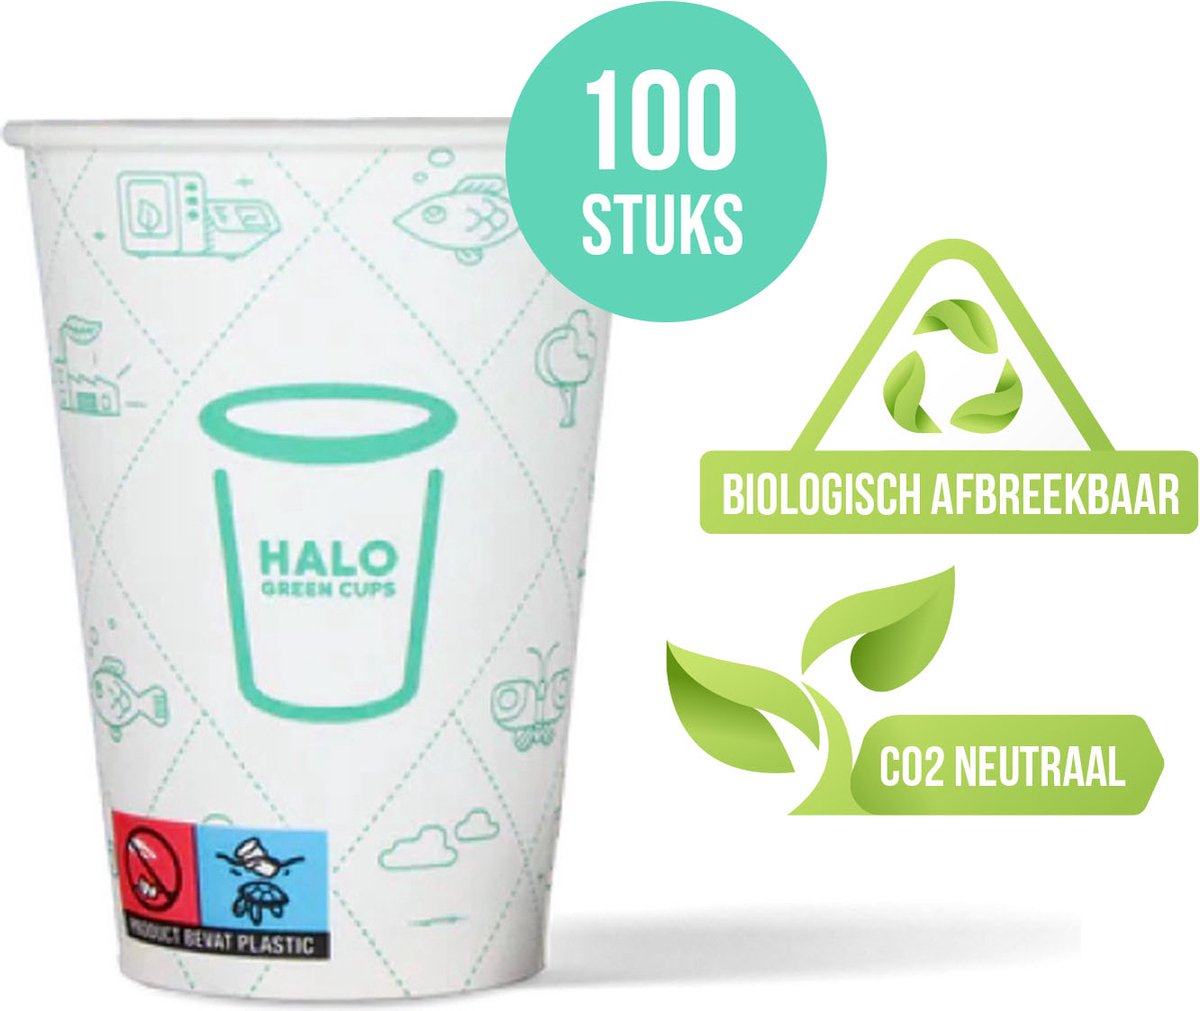 HALO Green Cups Koffiebekers - To Go Bekers - Wegwerp beker - Biologisch afbreekbaar - CO2 Neutraal - PLA/FSC - 180ml/7.5Z - 100 Stuks